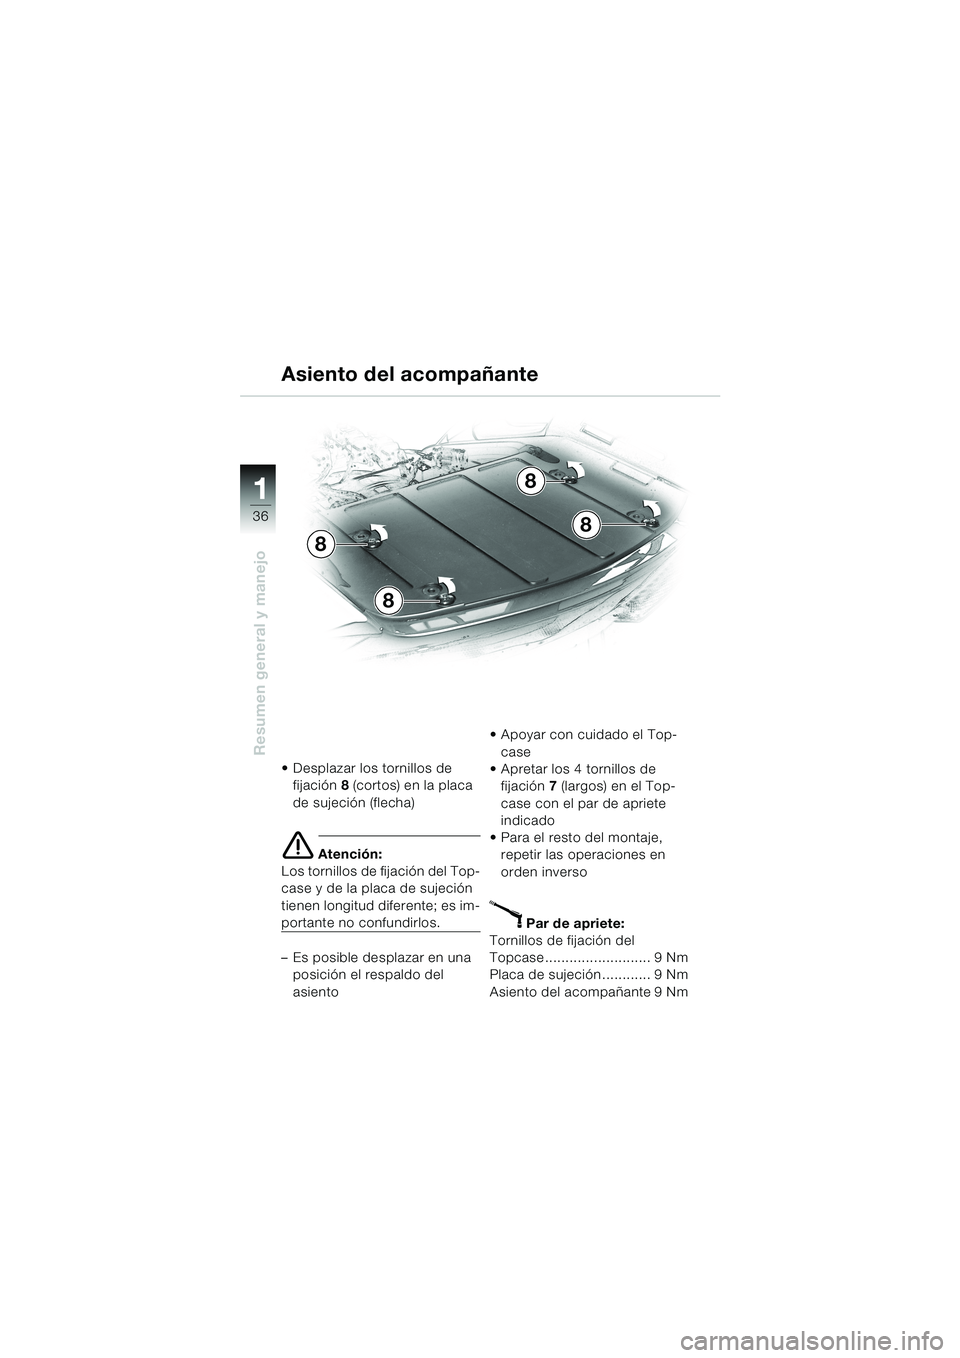 BMW MOTORRAD K 1200 LT 2002  Manual de instrucciones (in Spanish) 36
Resumen general y manejo
1
Asiento del acompañante
Desplazar los tornillos de 
fijación8 (cortos) en la placa 
de sujeción (flecha)
e Atención:
Los tornillos de fijación del Top-
case y de la